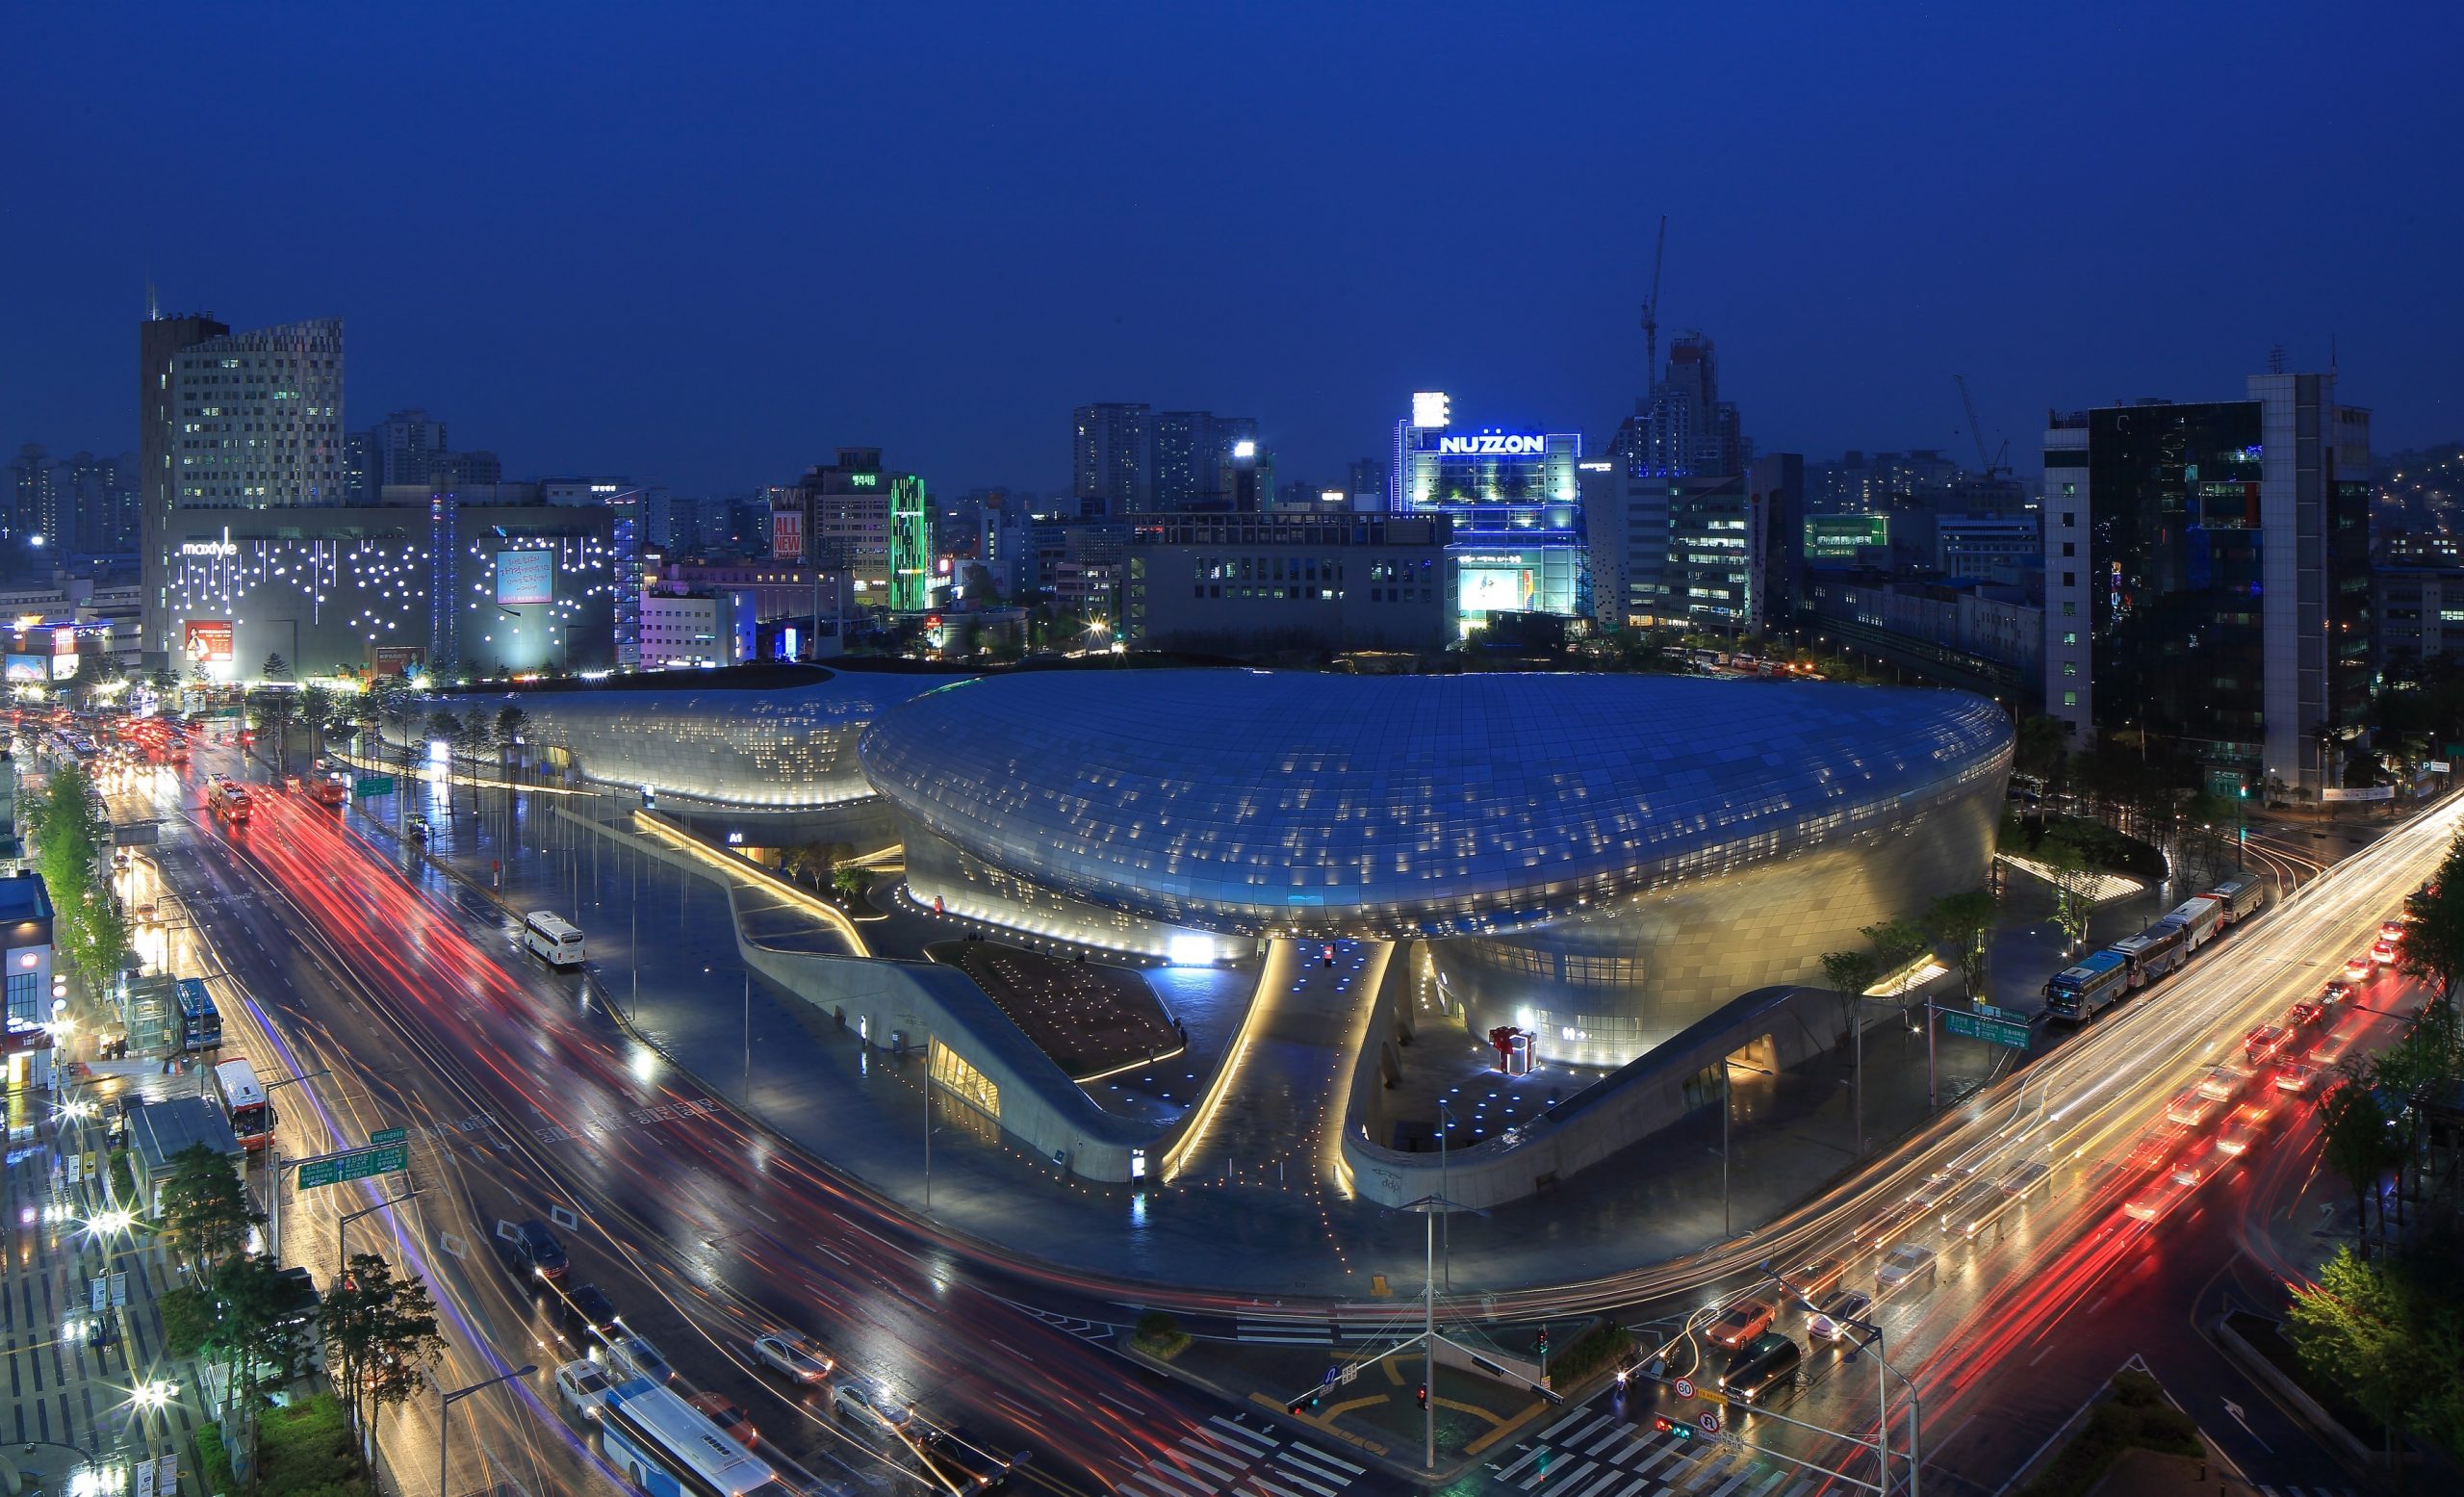 Dongdaemun Design Plaza - công trình tiêu biểu của phong cách kiến trúc Hậu hiện đại